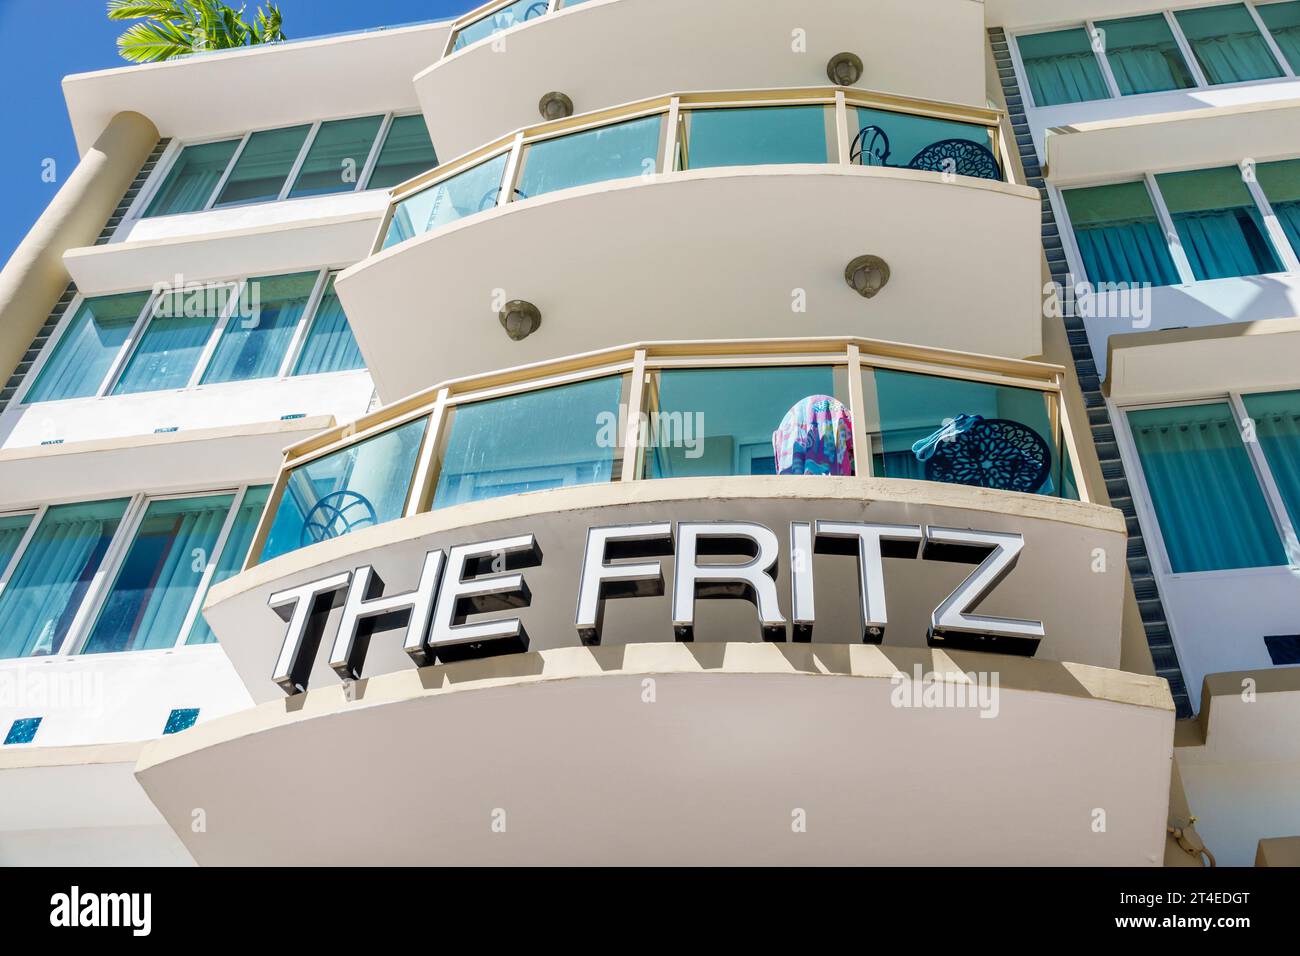 Miami Beach Floride, extérieur, entrée principale de l'hôtel, Ocean Drive, enseigne de l'hôtel Fritz, hôtels motels entreprises Banque D'Images